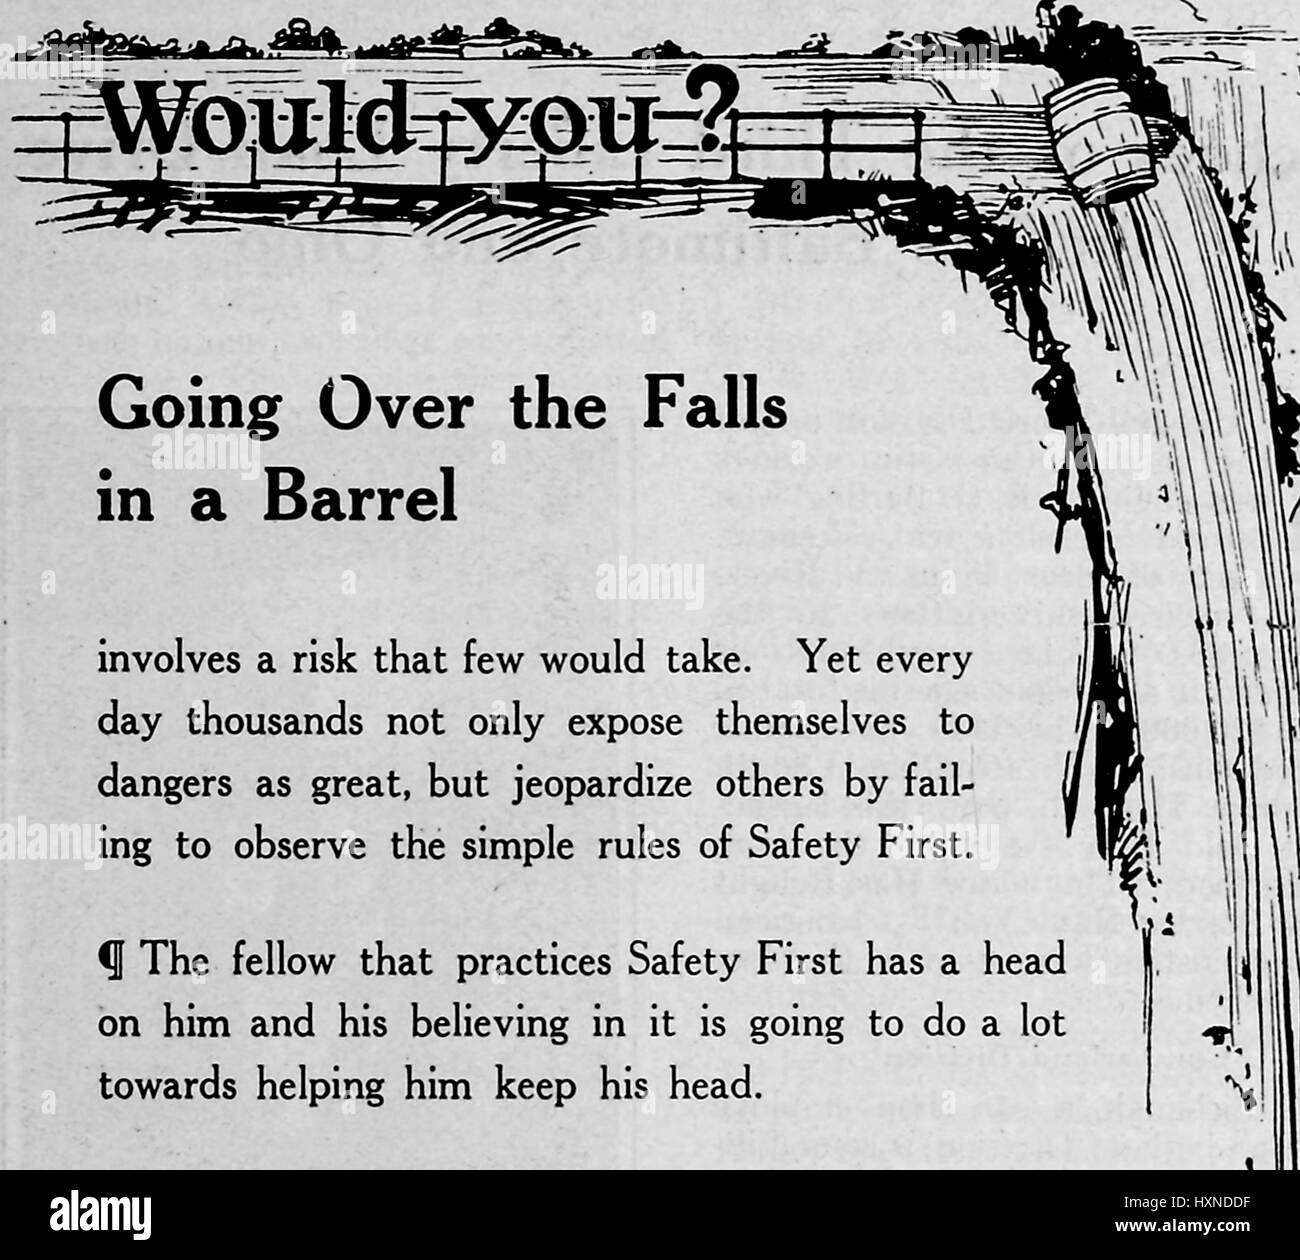 Exemple d'une personne allant au-dessus des Chutes du Niagara dans un tonneau, avec une note sur les risques et la sécurité personnelle, informant le lecteur de mettre 'Safety First', 1912. Banque D'Images